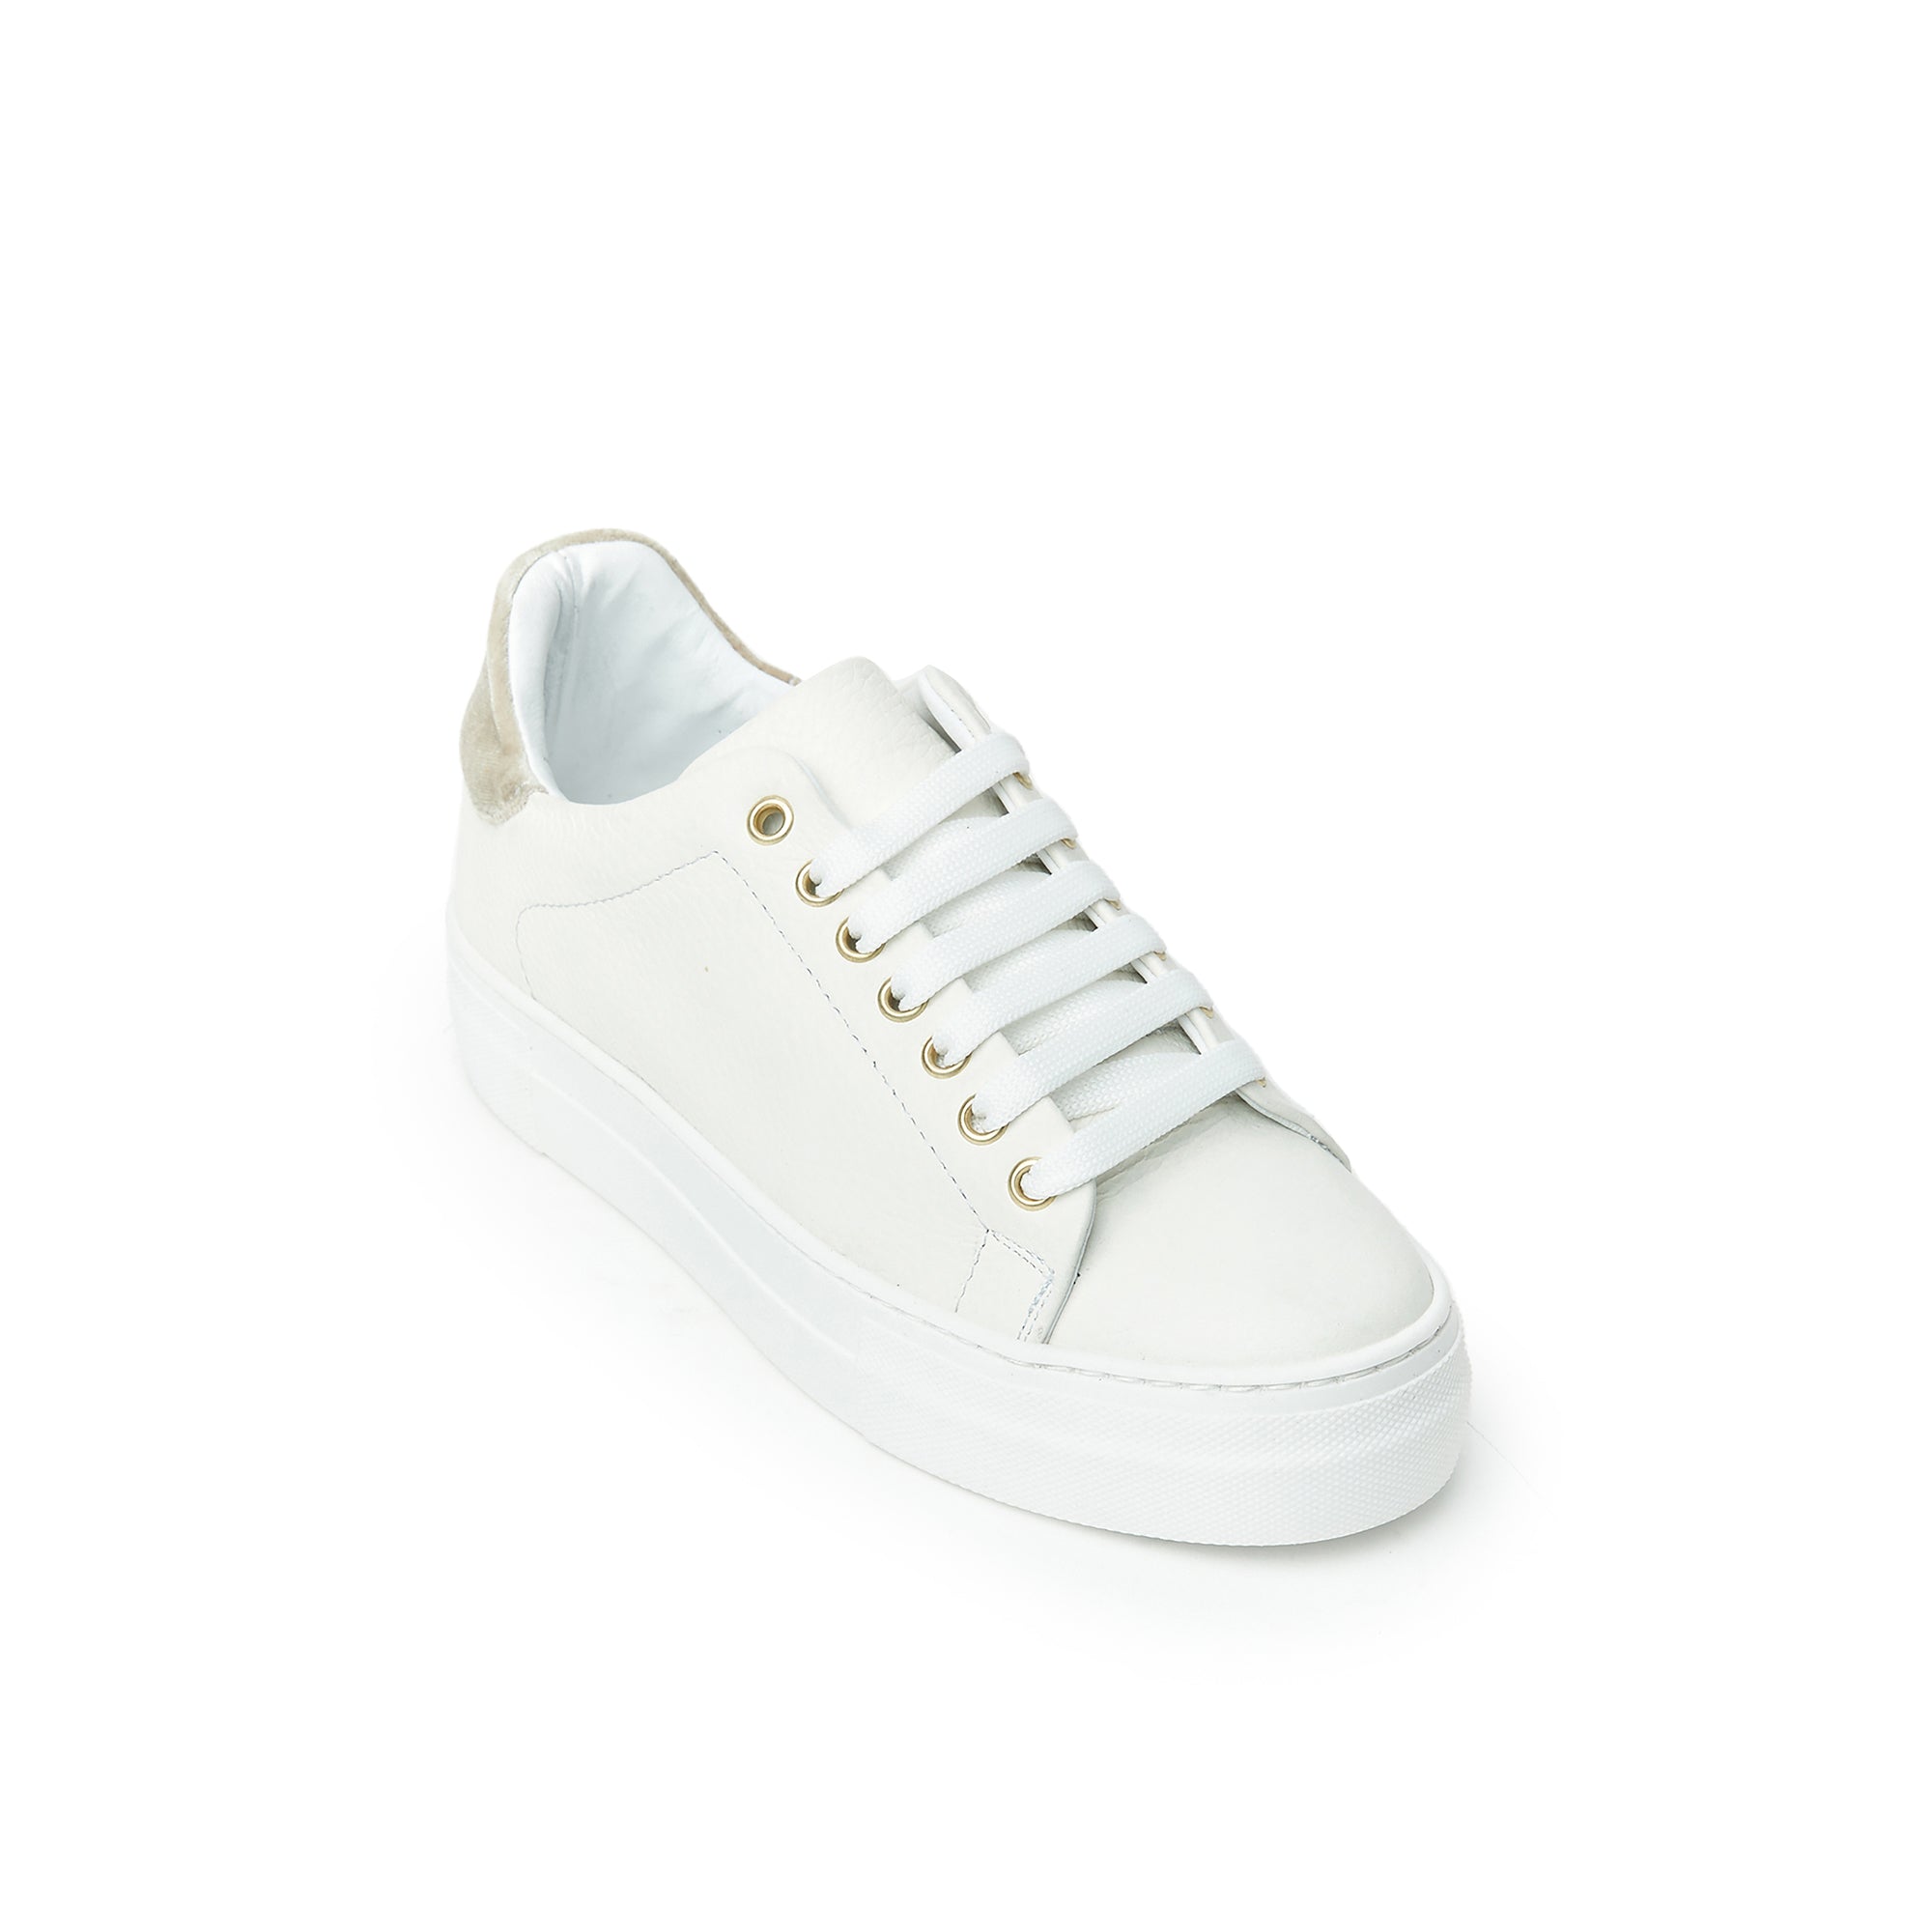 Sneaker cream white and beige